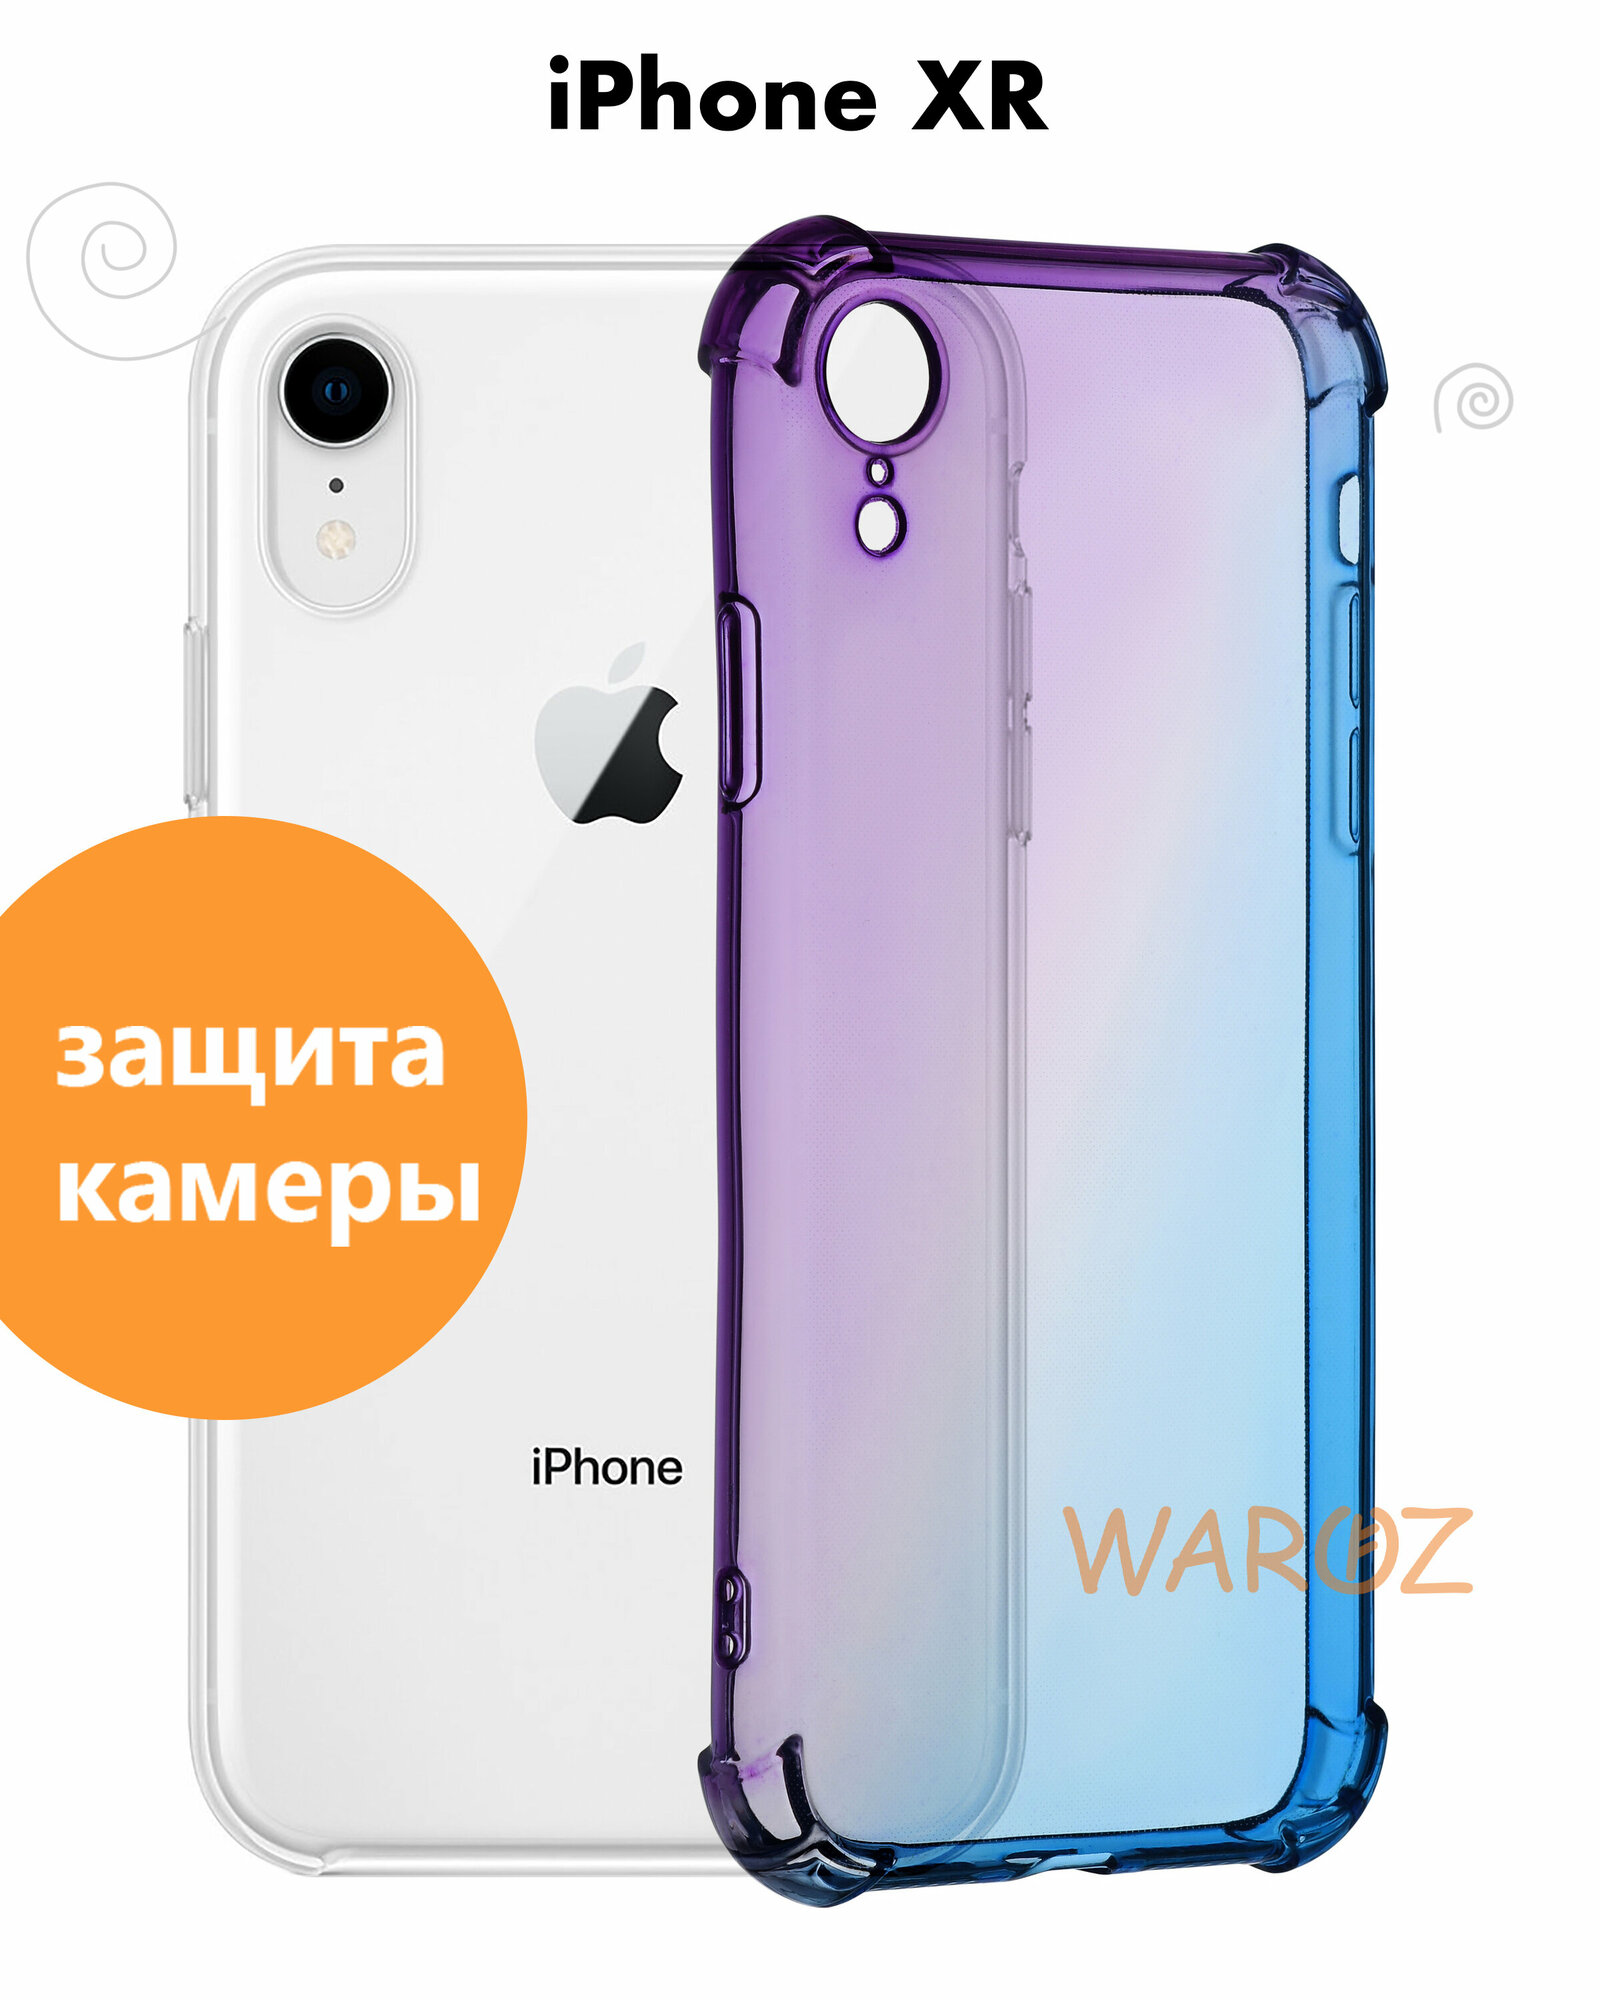 Чехол силиконовый на телефон Apple iPhone XR прозрачный противоударный с защитой камеры, бампер с усиленными углами для смартфона Айфон хр, фиолетово-синий